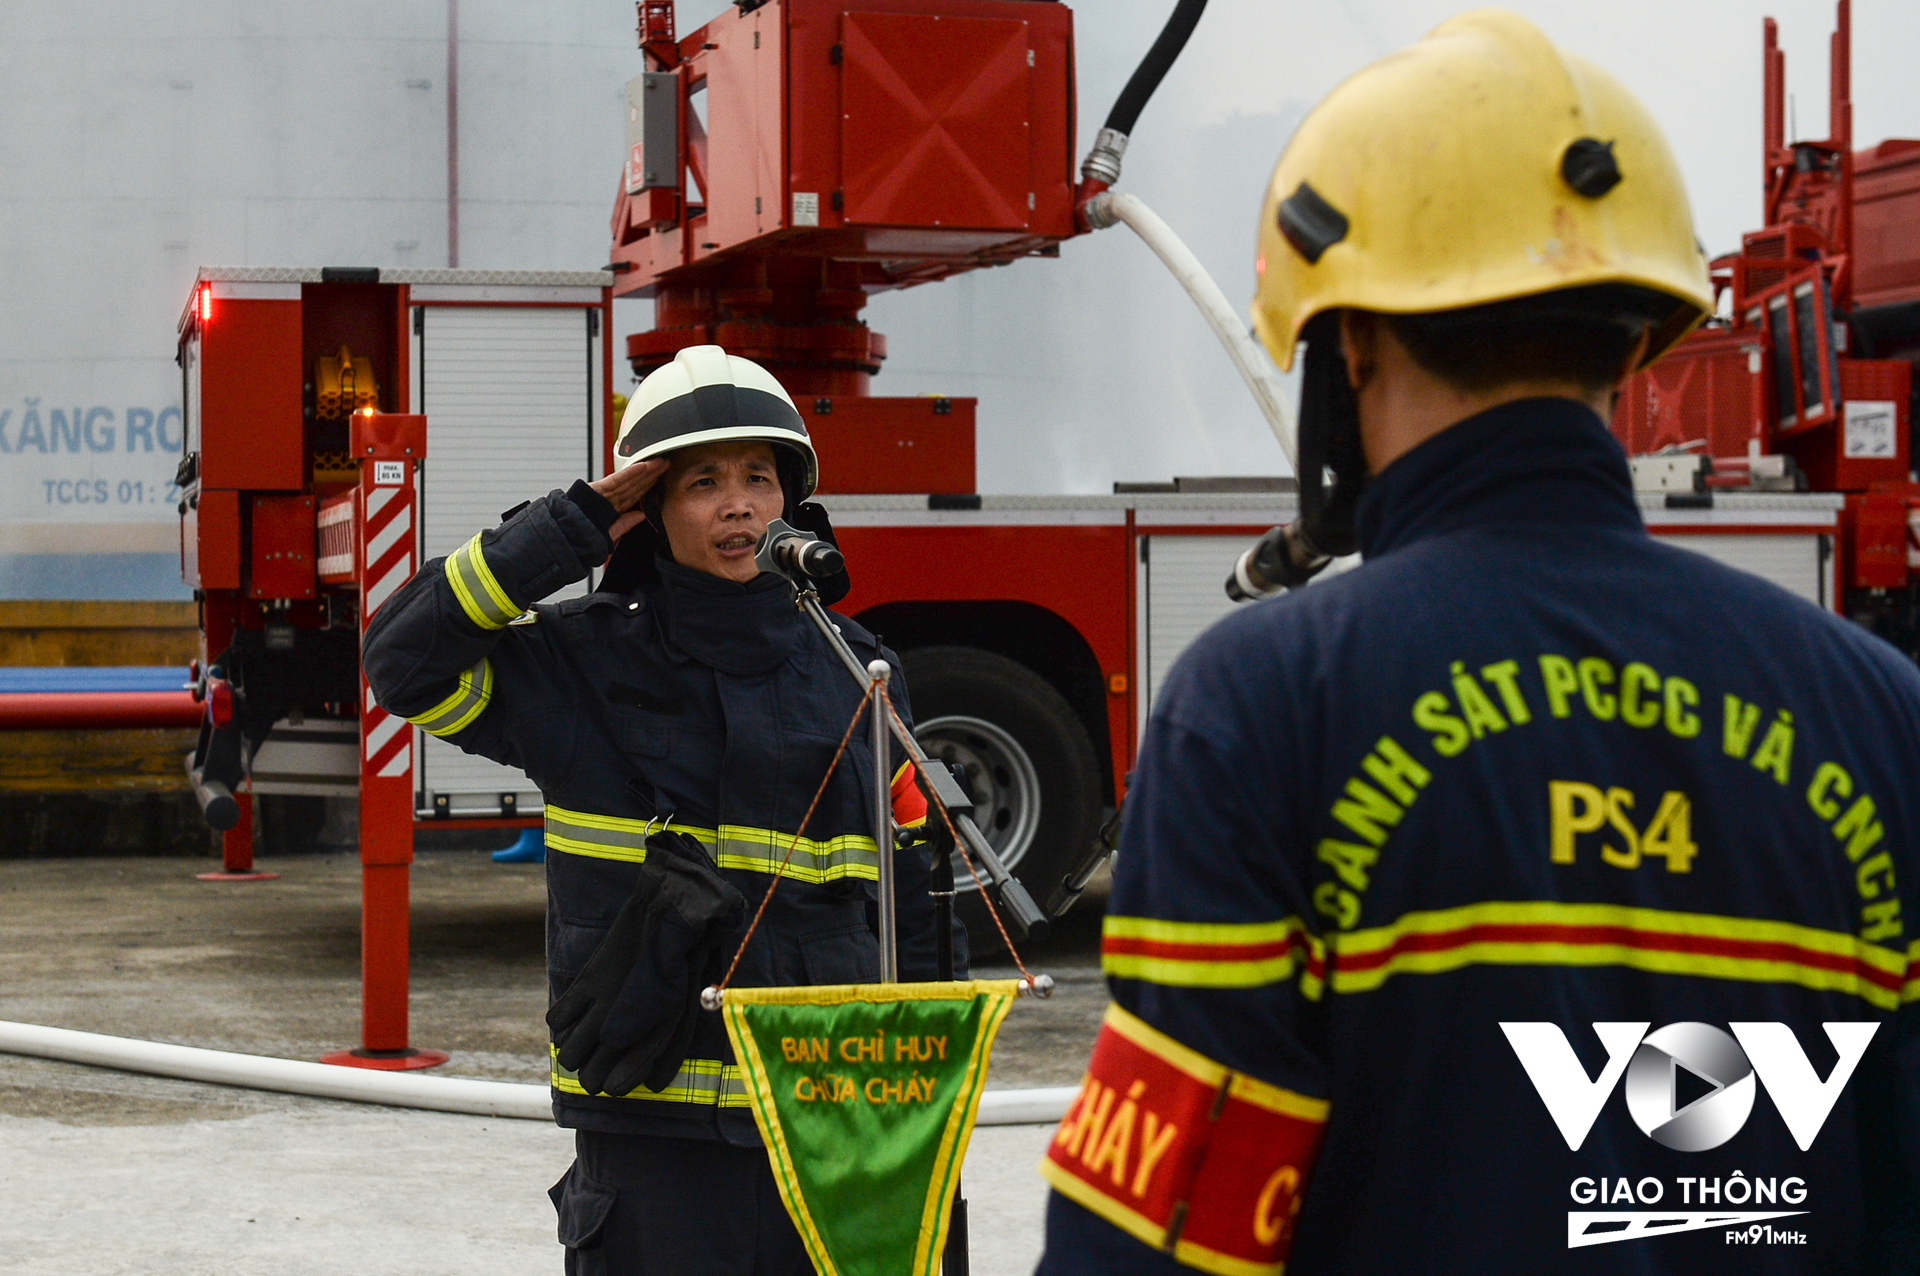 Khi các chỉ huy của đơn vị chi hiện đến sẽ tới ngay bàn chỉ huy nhận nhiệm vụ tiếp tục triển khai công tác chữa cháy và cứu nạn, cứu hộ tại hiện trường.